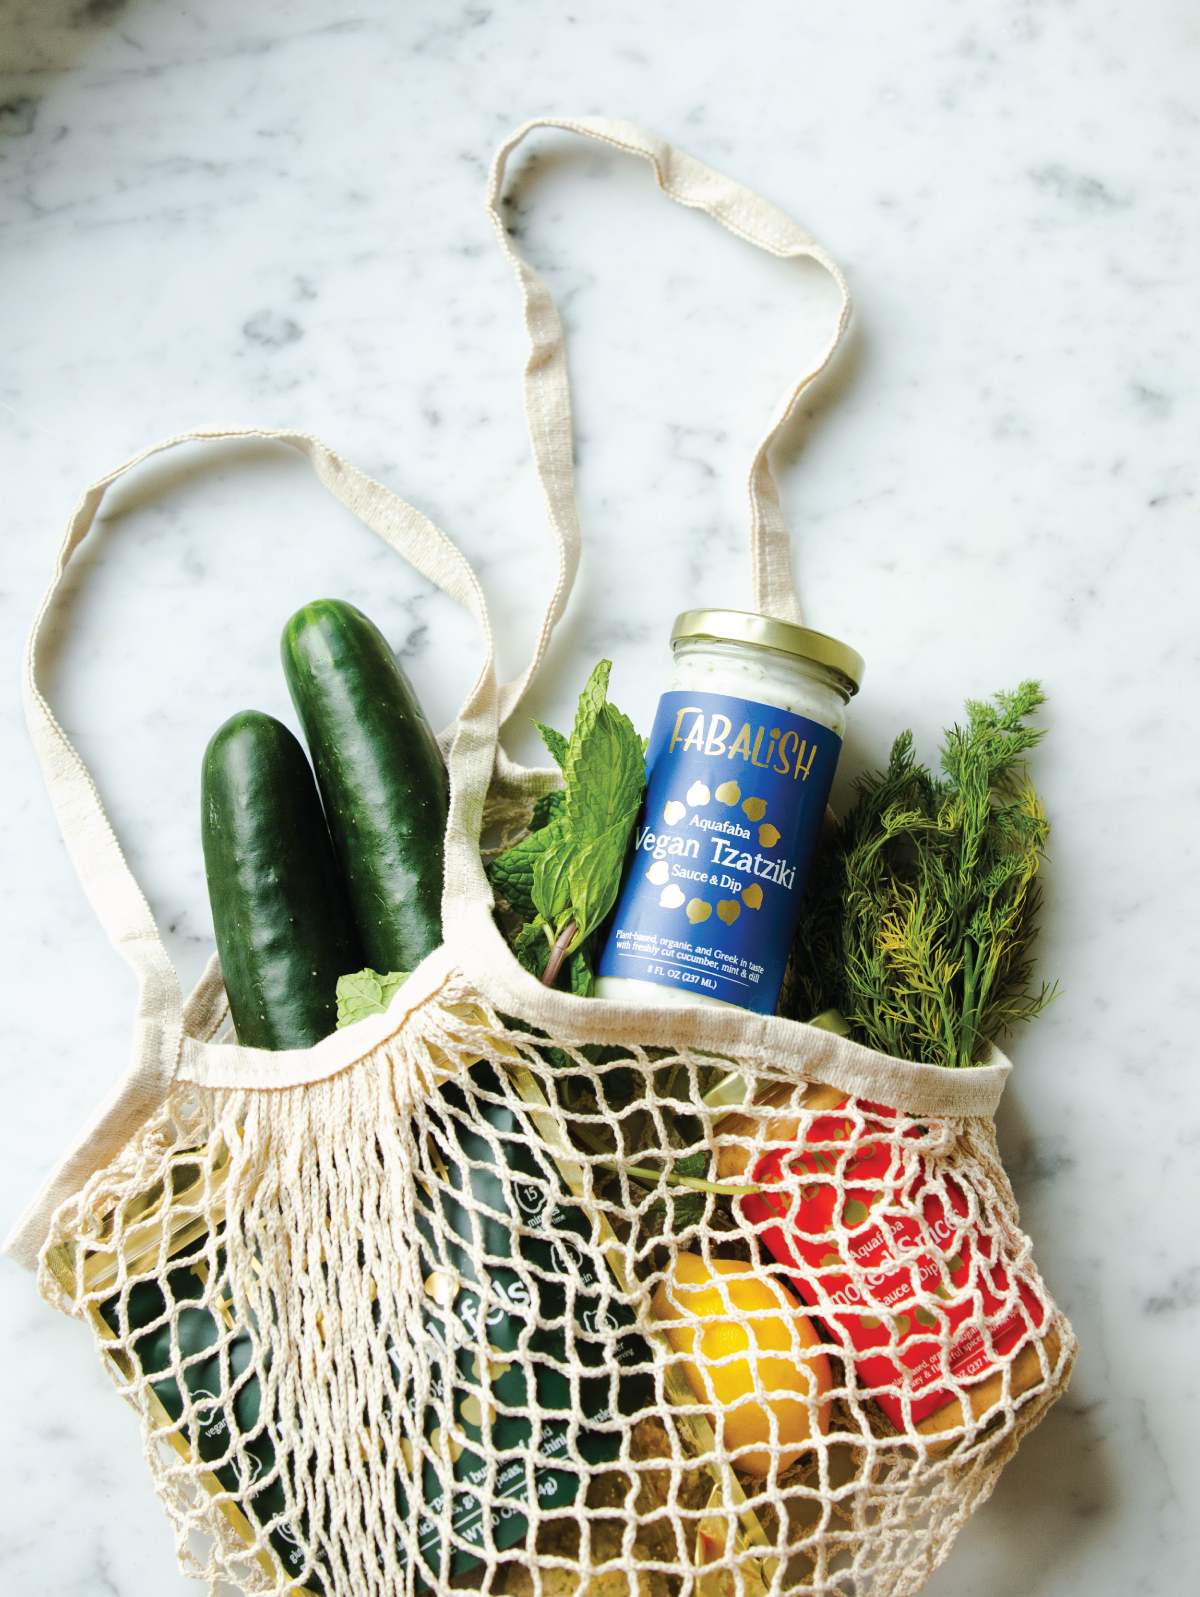 Produce in a reusable shopping bag